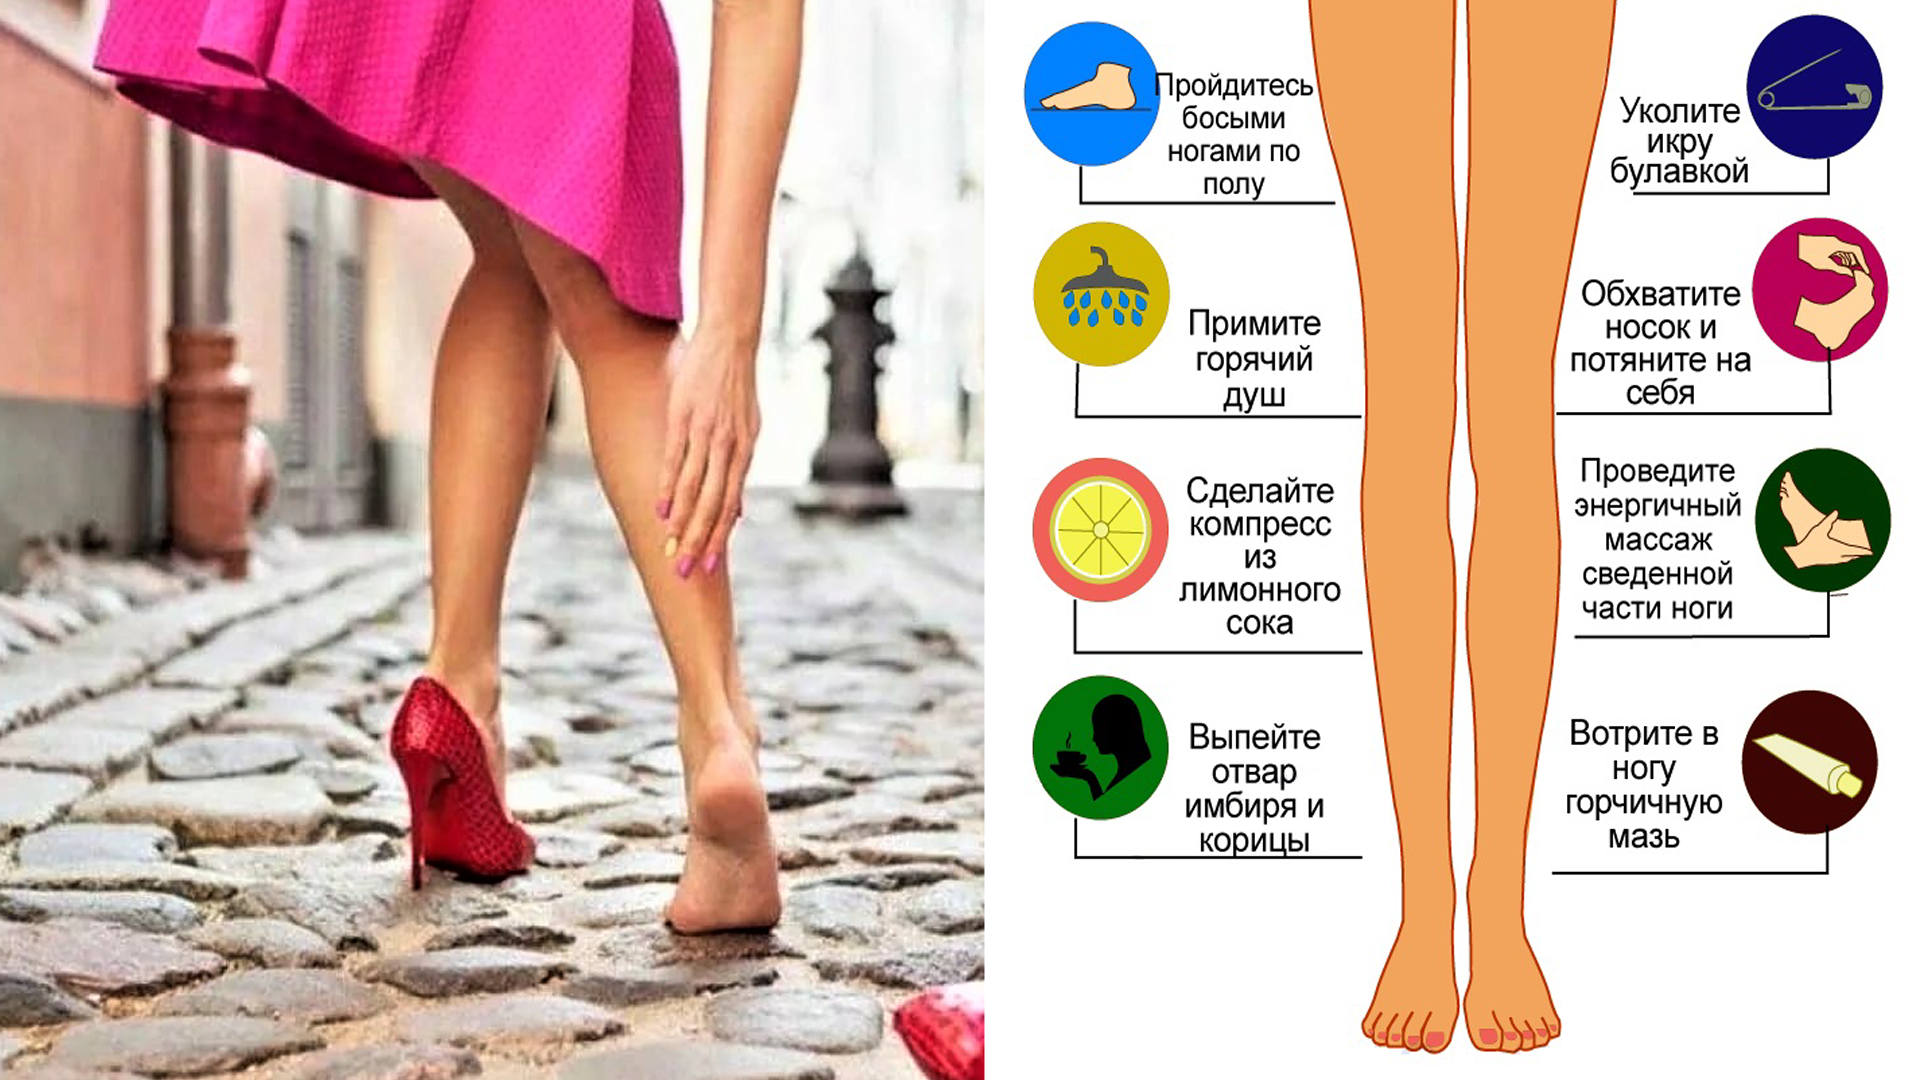 Боль в ногах: причины, симптомы, диагностика и лечение | ким